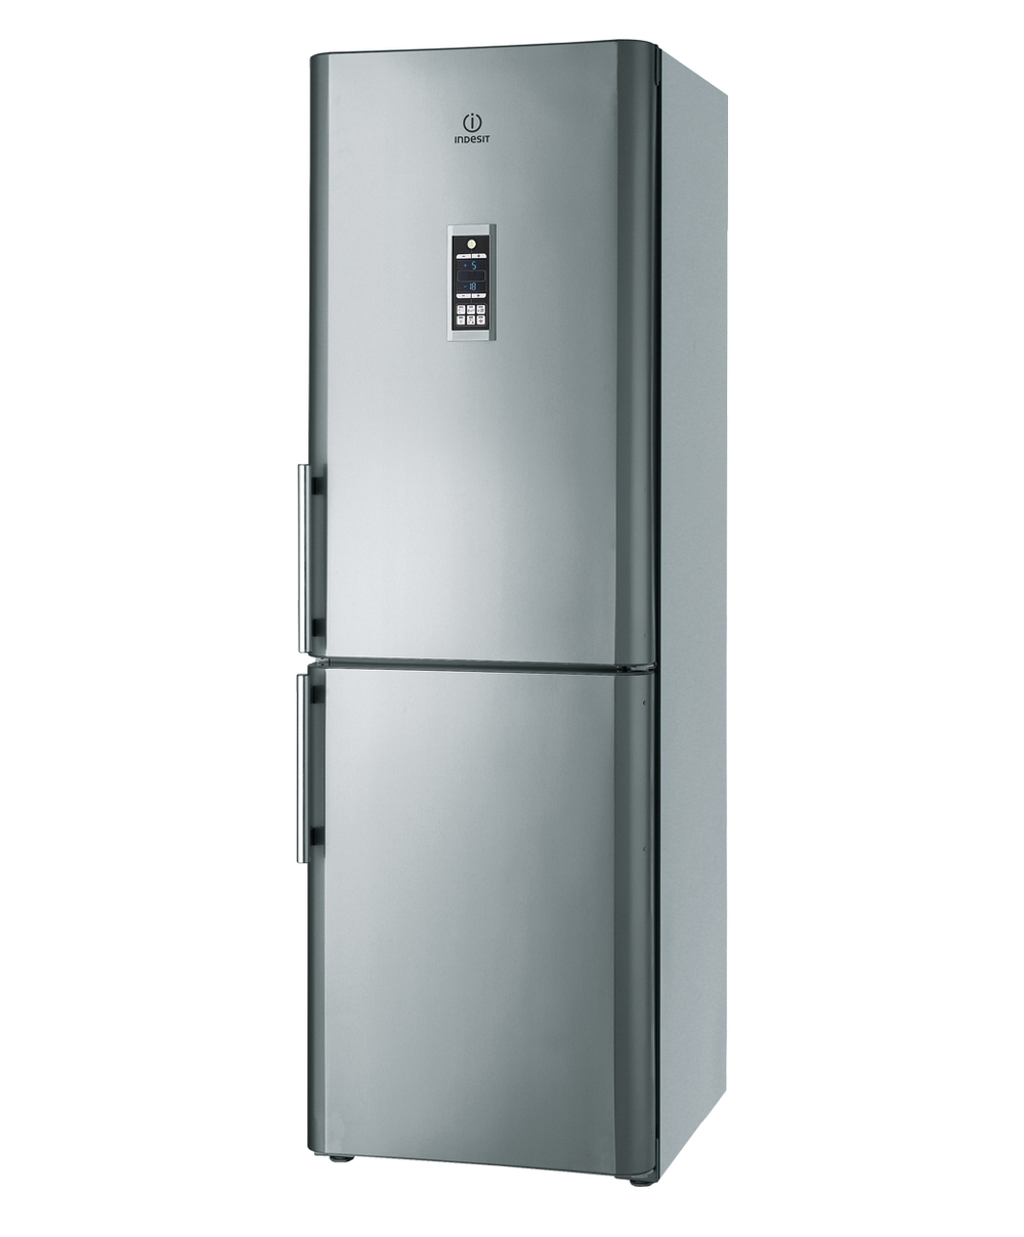 Foto: Indesit-Innovatieve-koelkast-diepvries